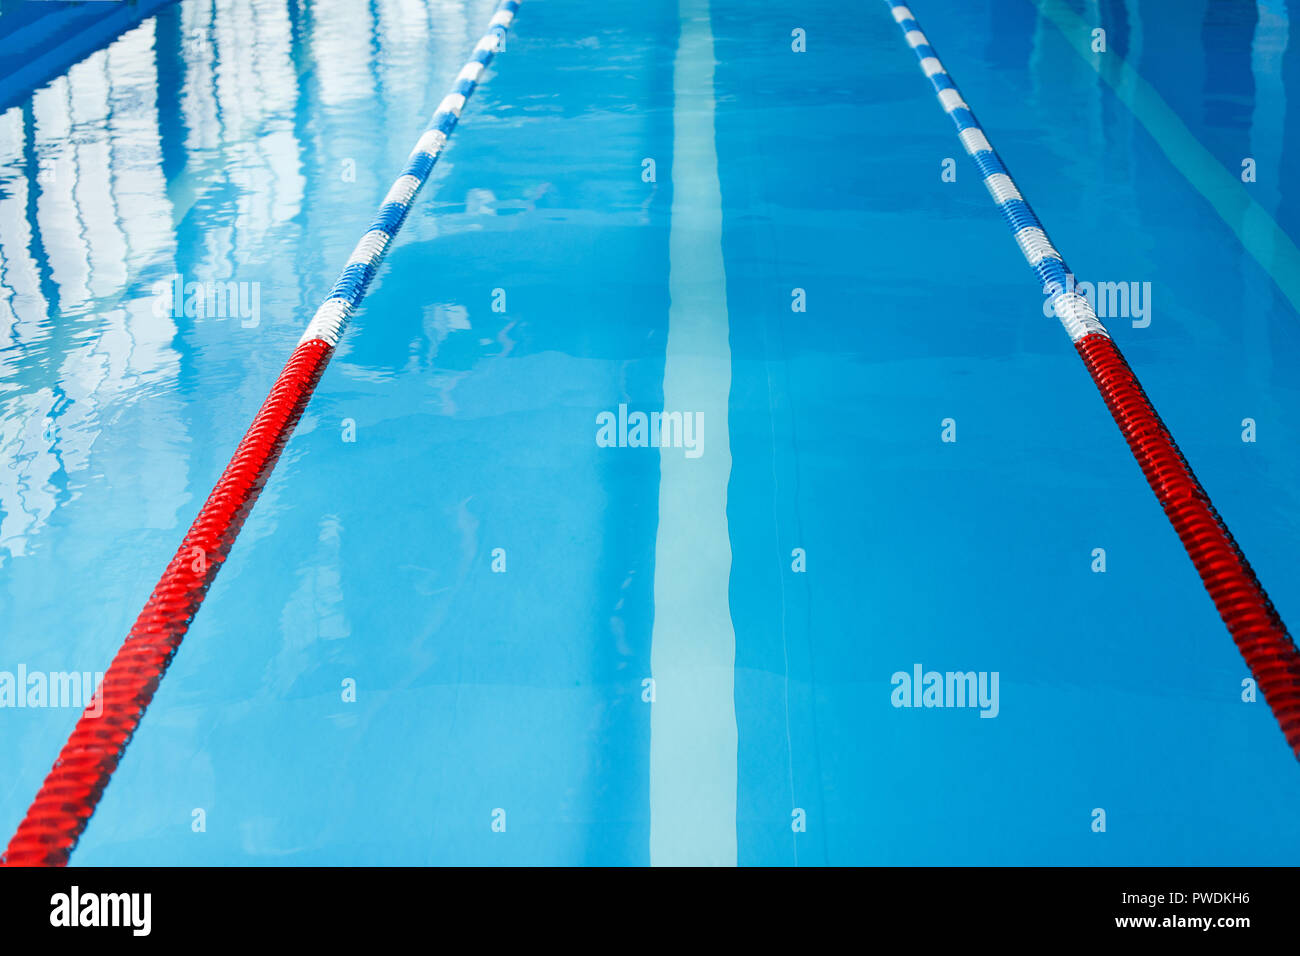 Divisori per piscine immagini e fotografie stock ad alta risoluzione - Alamy